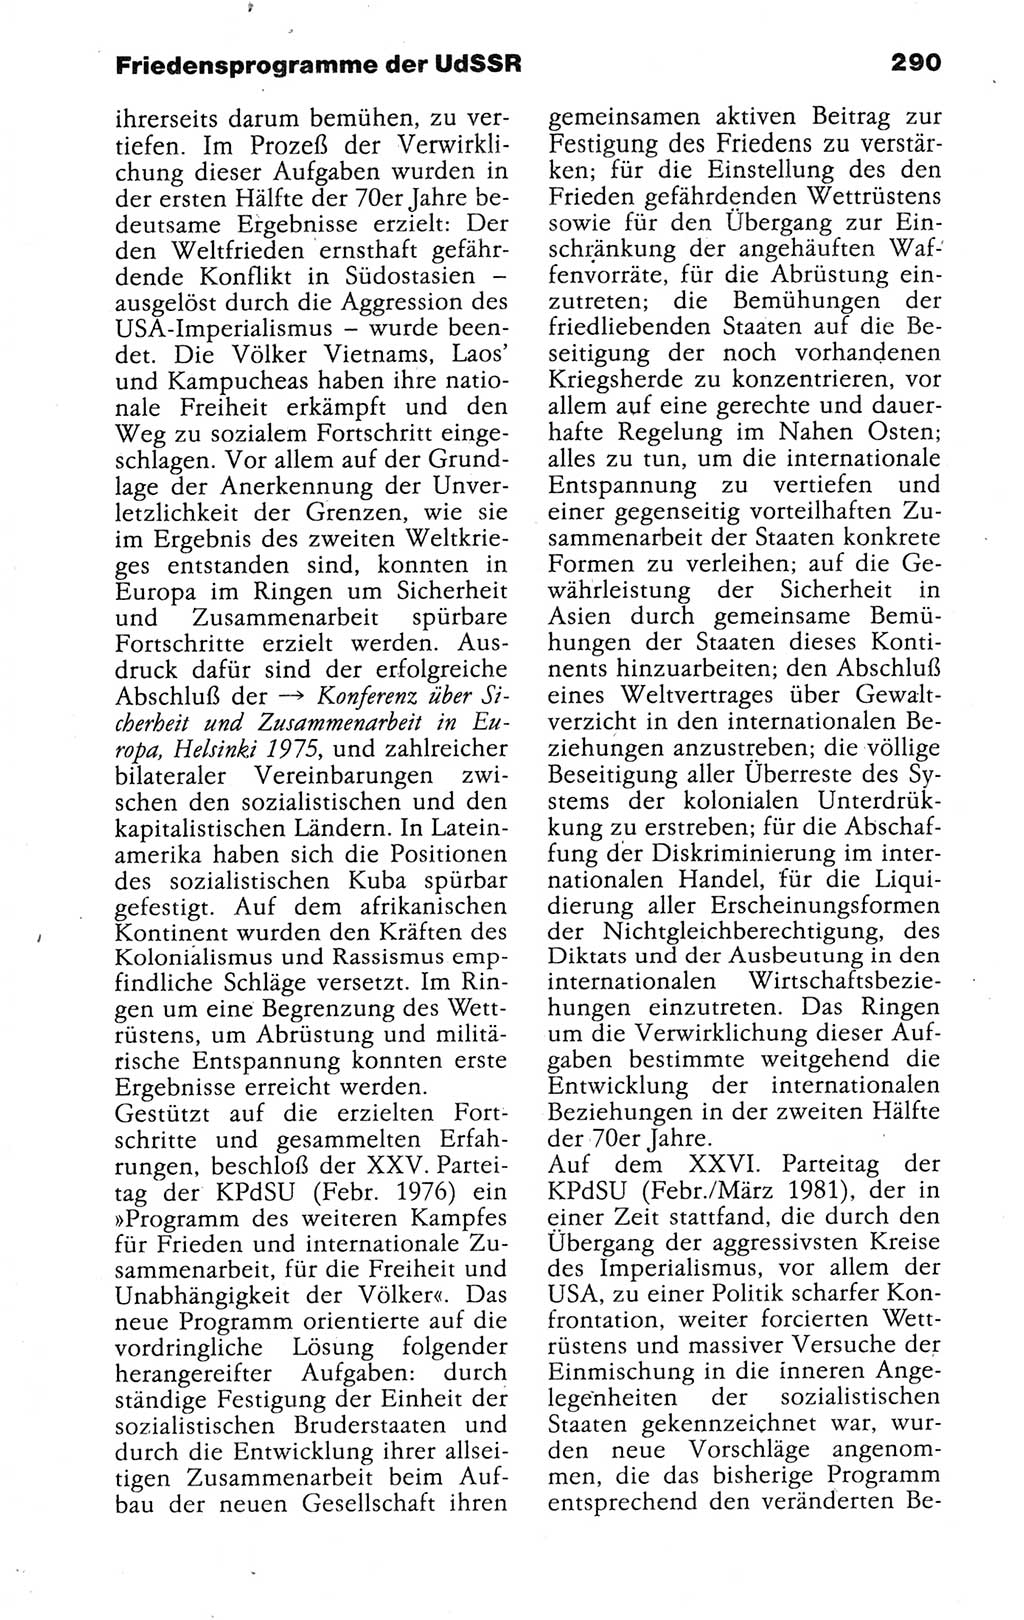 Kleines politisches Wörterbuch [Deutsche Demokratische Republik (DDR)] 1988, Seite 290 (Kl. pol. Wb. DDR 1988, S. 290)